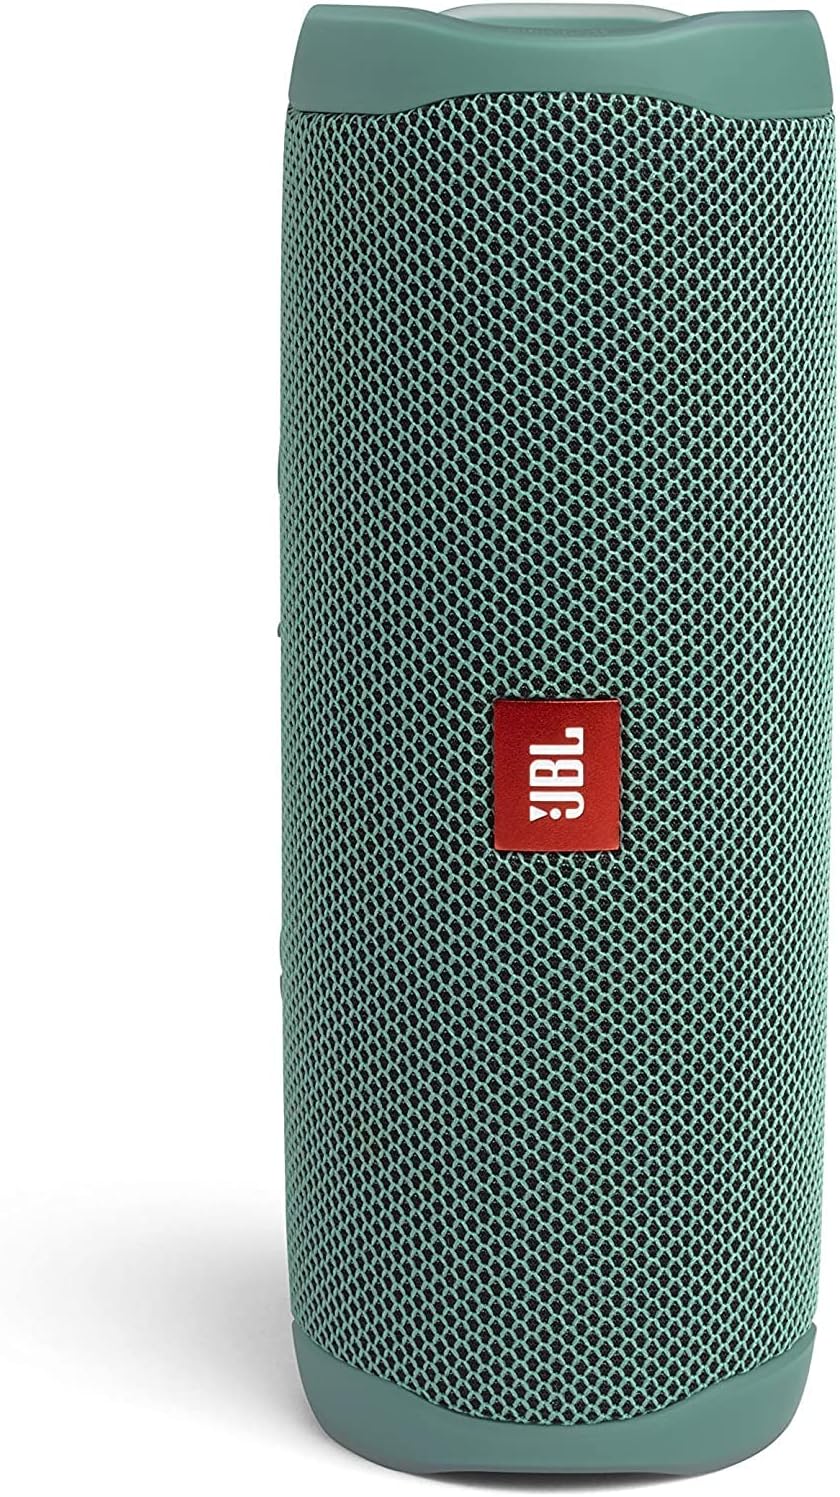 JBL Flip 5 Waterproof Wireless Portable Speaker - Forest Green (New)